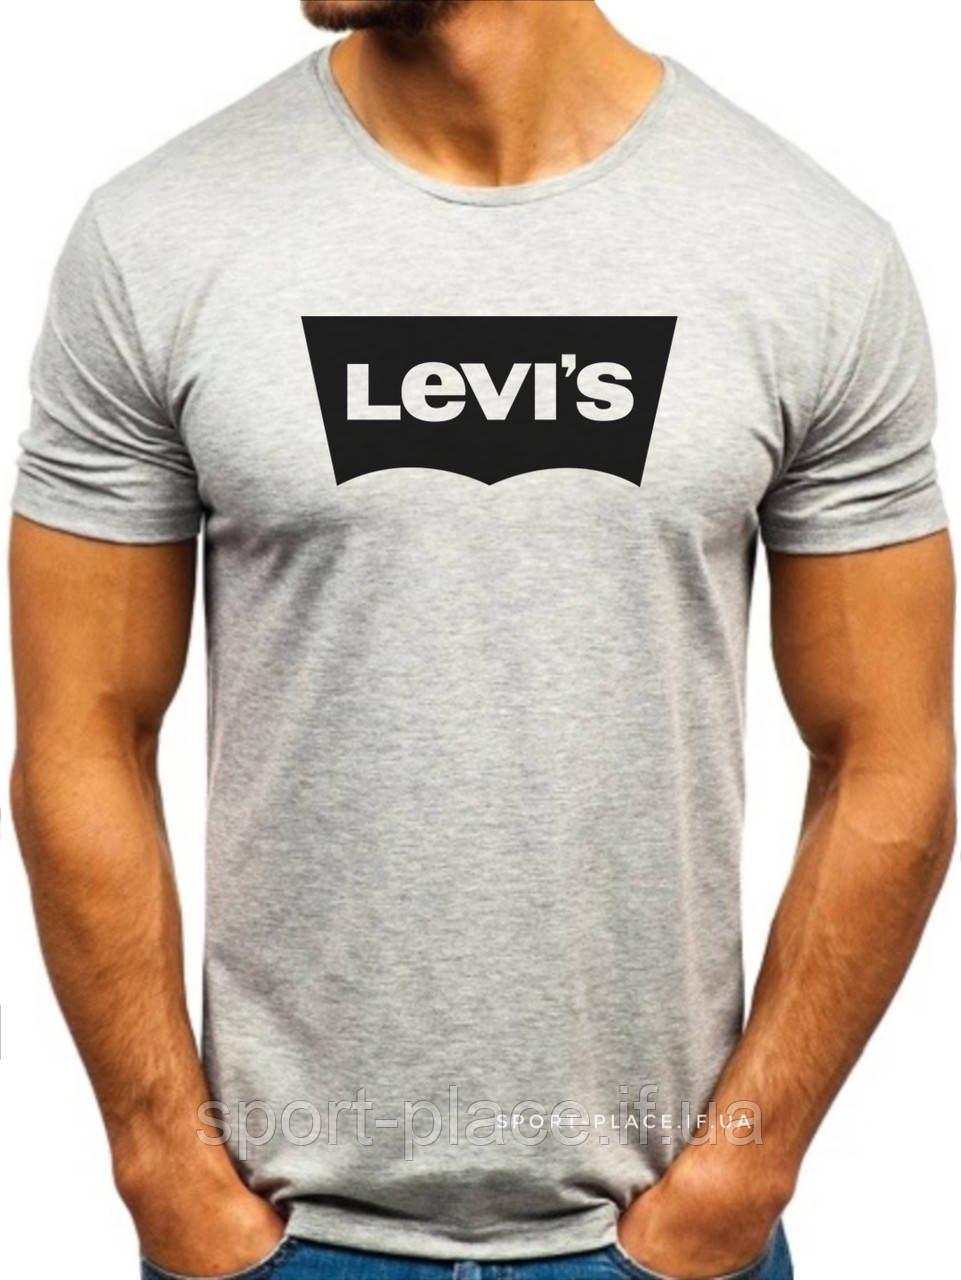 Чоловіча футболка Levis (Левіс) сірий (велика емблема) бавовна